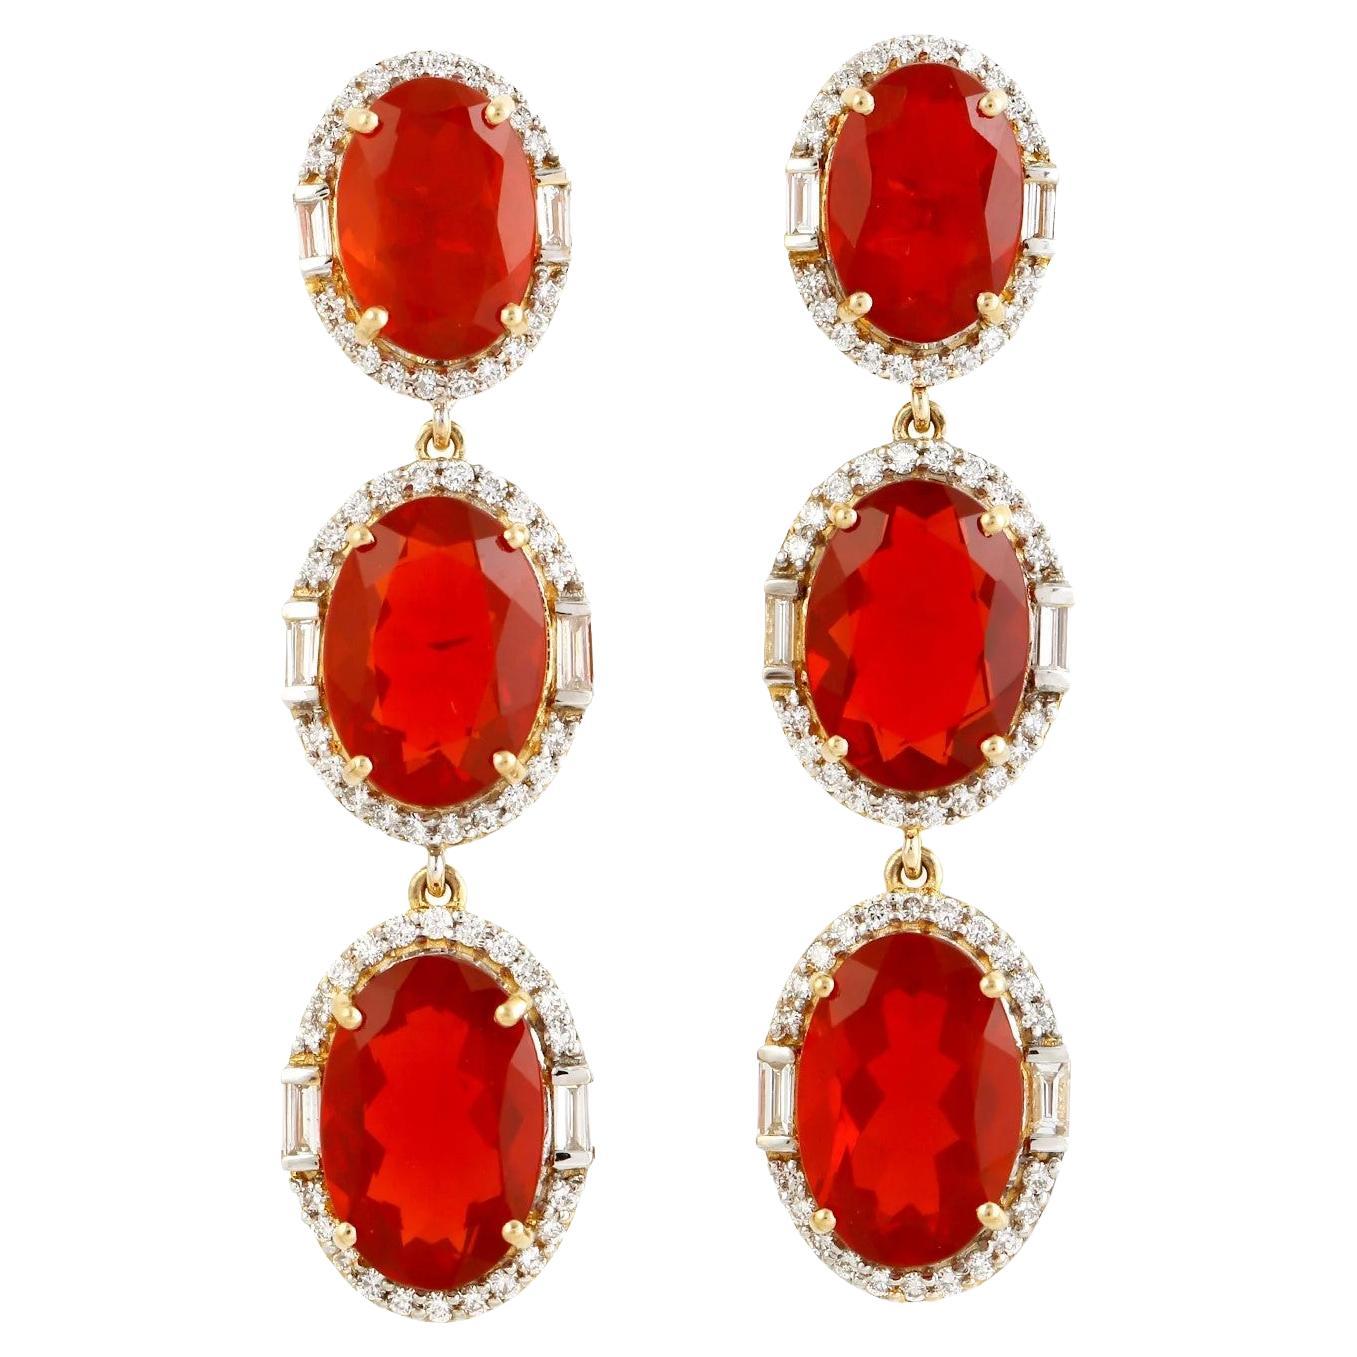  Meghna Jewels 13.27 Carats Fire Opal Diamond 18 Karat Gold Triple Drop Earrings